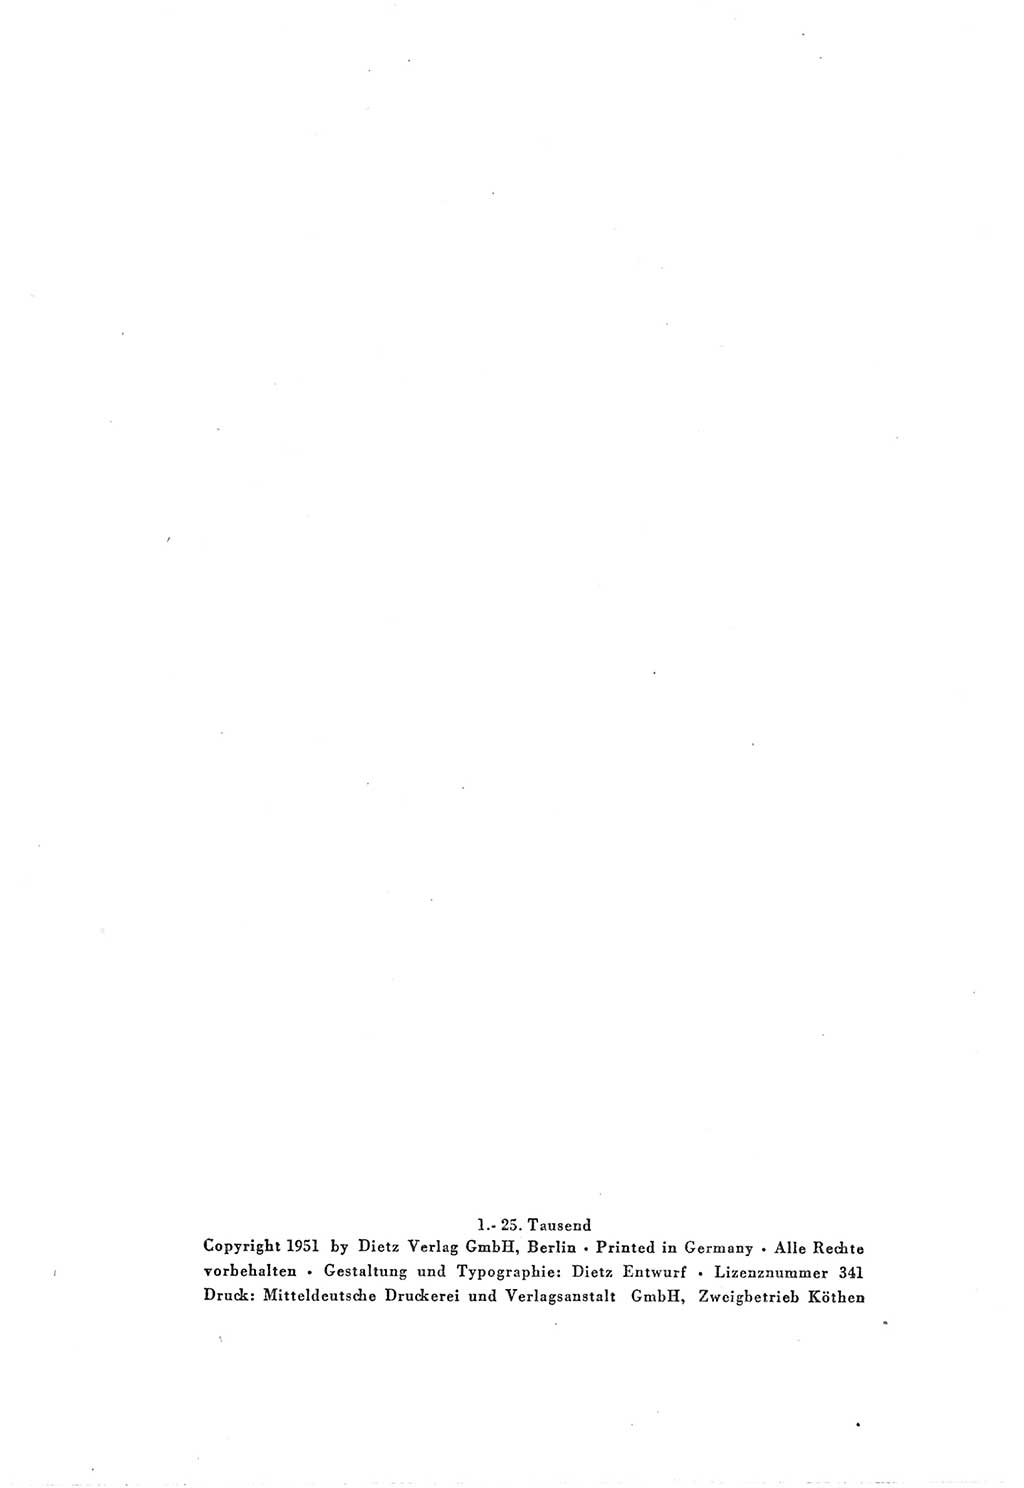 Protokoll der Verhandlungen des Ⅲ. Parteitages der Sozialistischen Einheitspartei Deutschlands (SED) [Deutsche Demokratische Republik (DDR)] 1950, Band 1, Seite 4 (Prot. Verh. Ⅲ. PT SED DDR 1950, Bd. 1, S. 4)